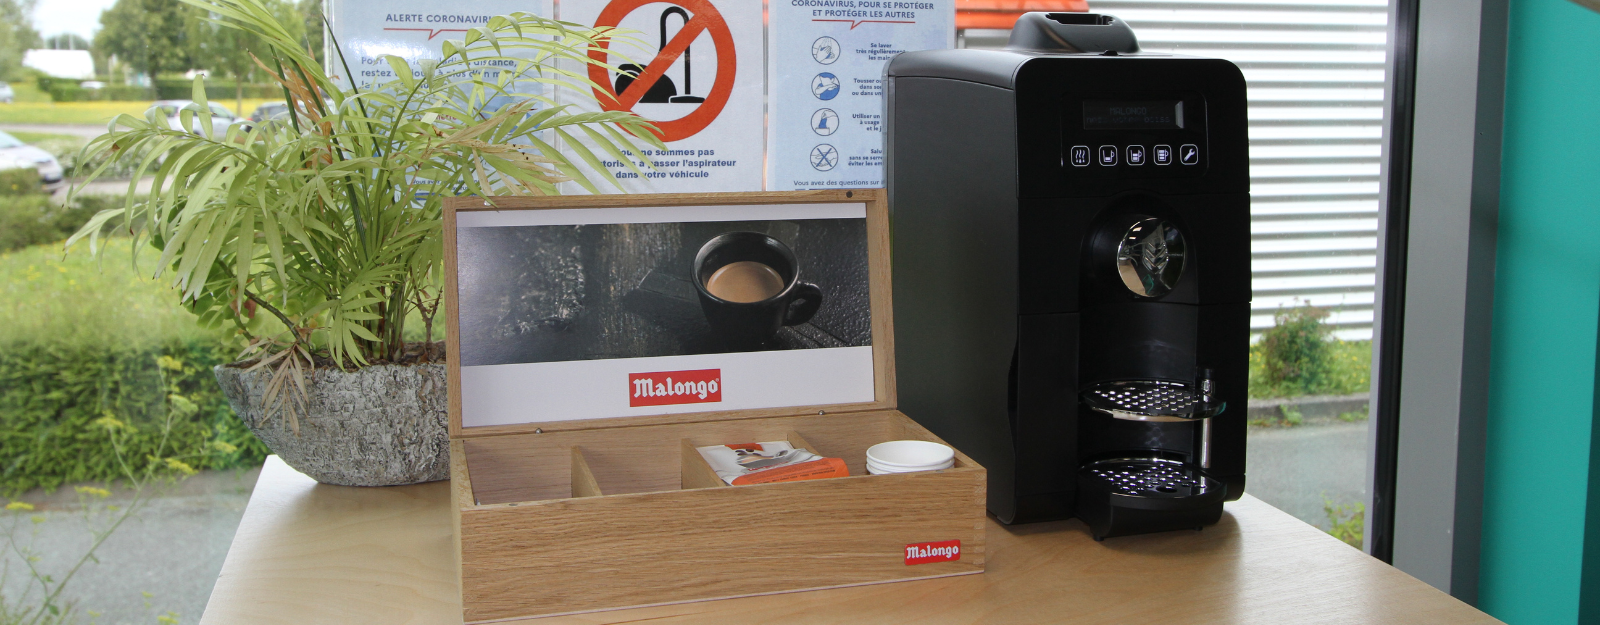 Commerce équitable: du café Malongo offert dans toutes les agences 123 Pare-Brise